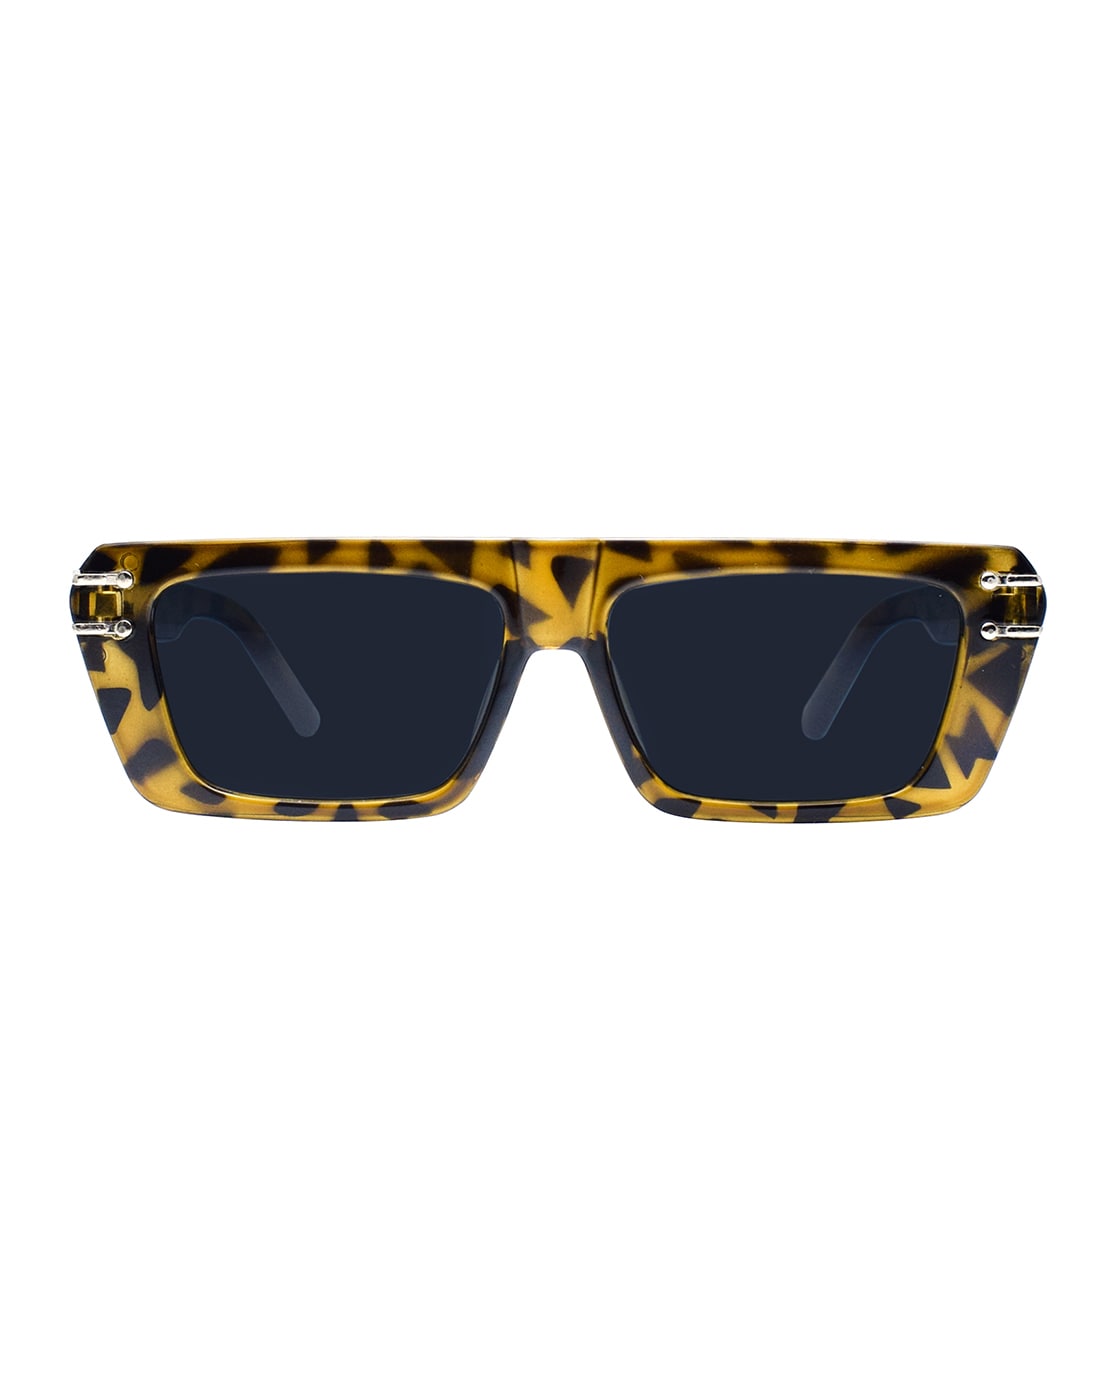 Louis Vuitton Brown Sunglasses for Men for sale